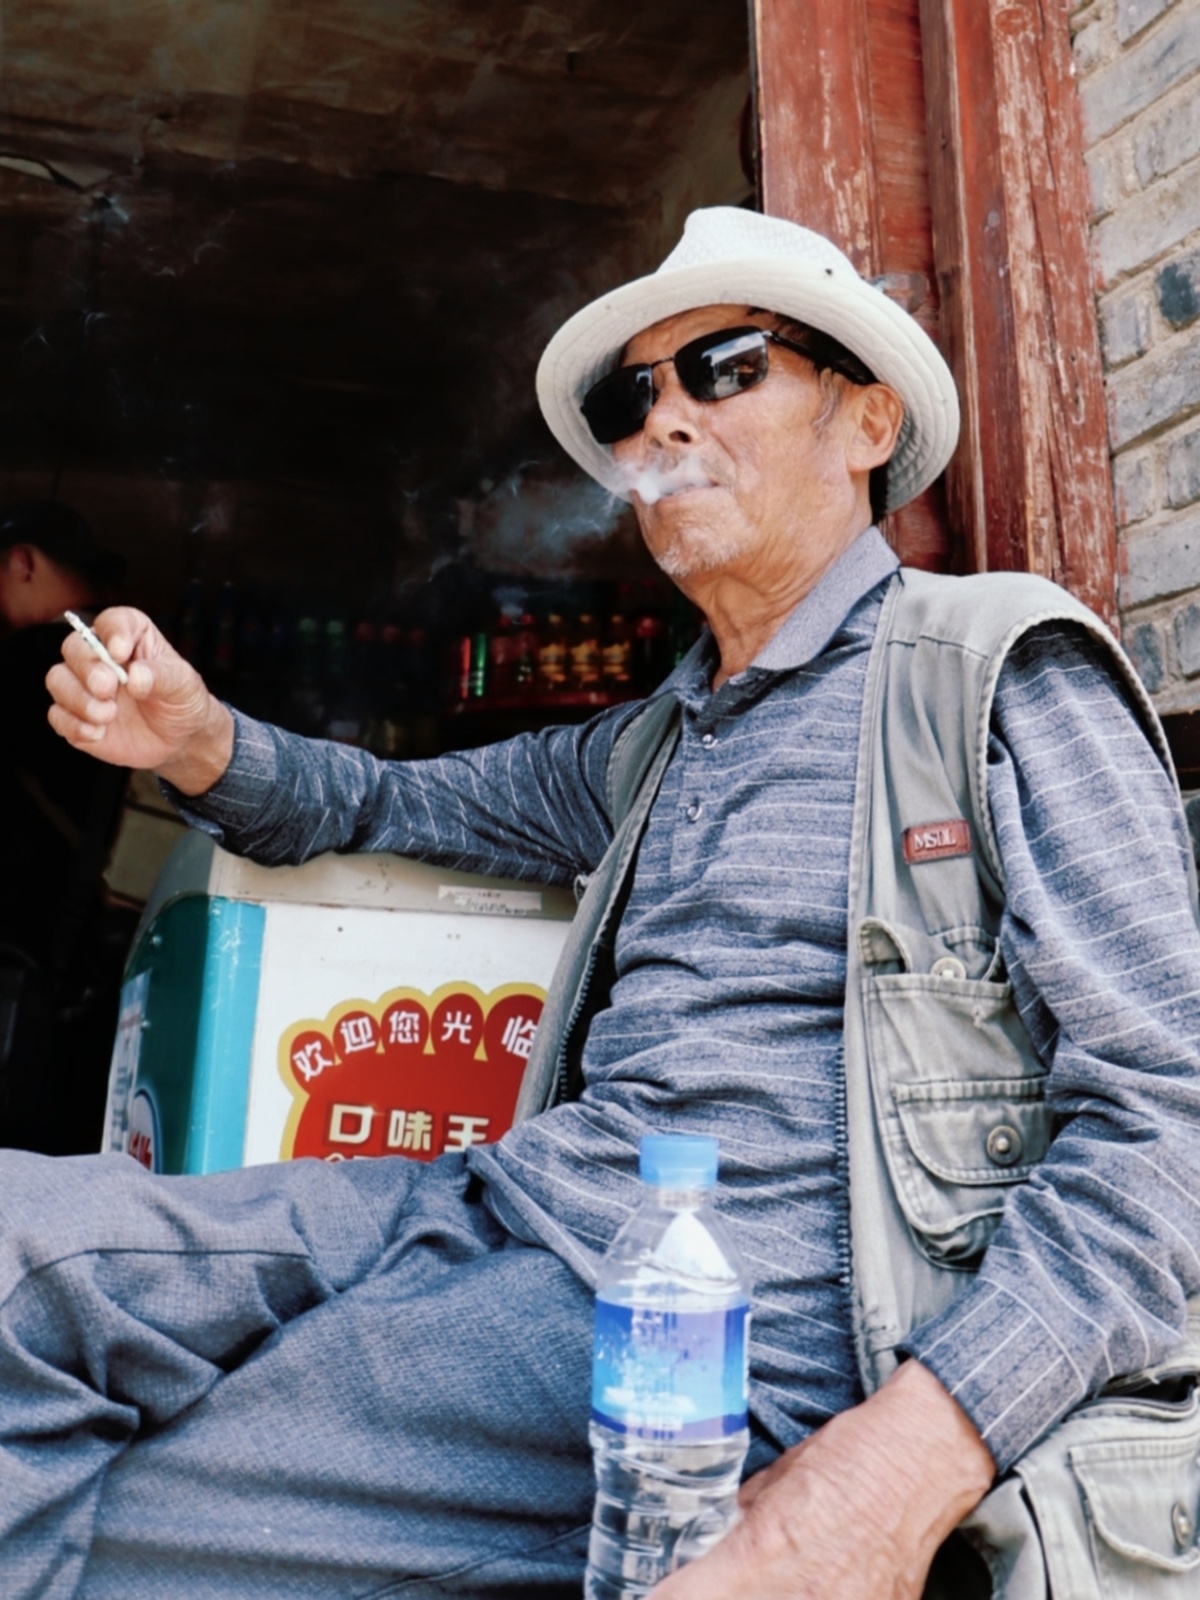 一个戴帽子、太阳镜、抽烟、坐在建筑物前、手拿一瓶水的老人。